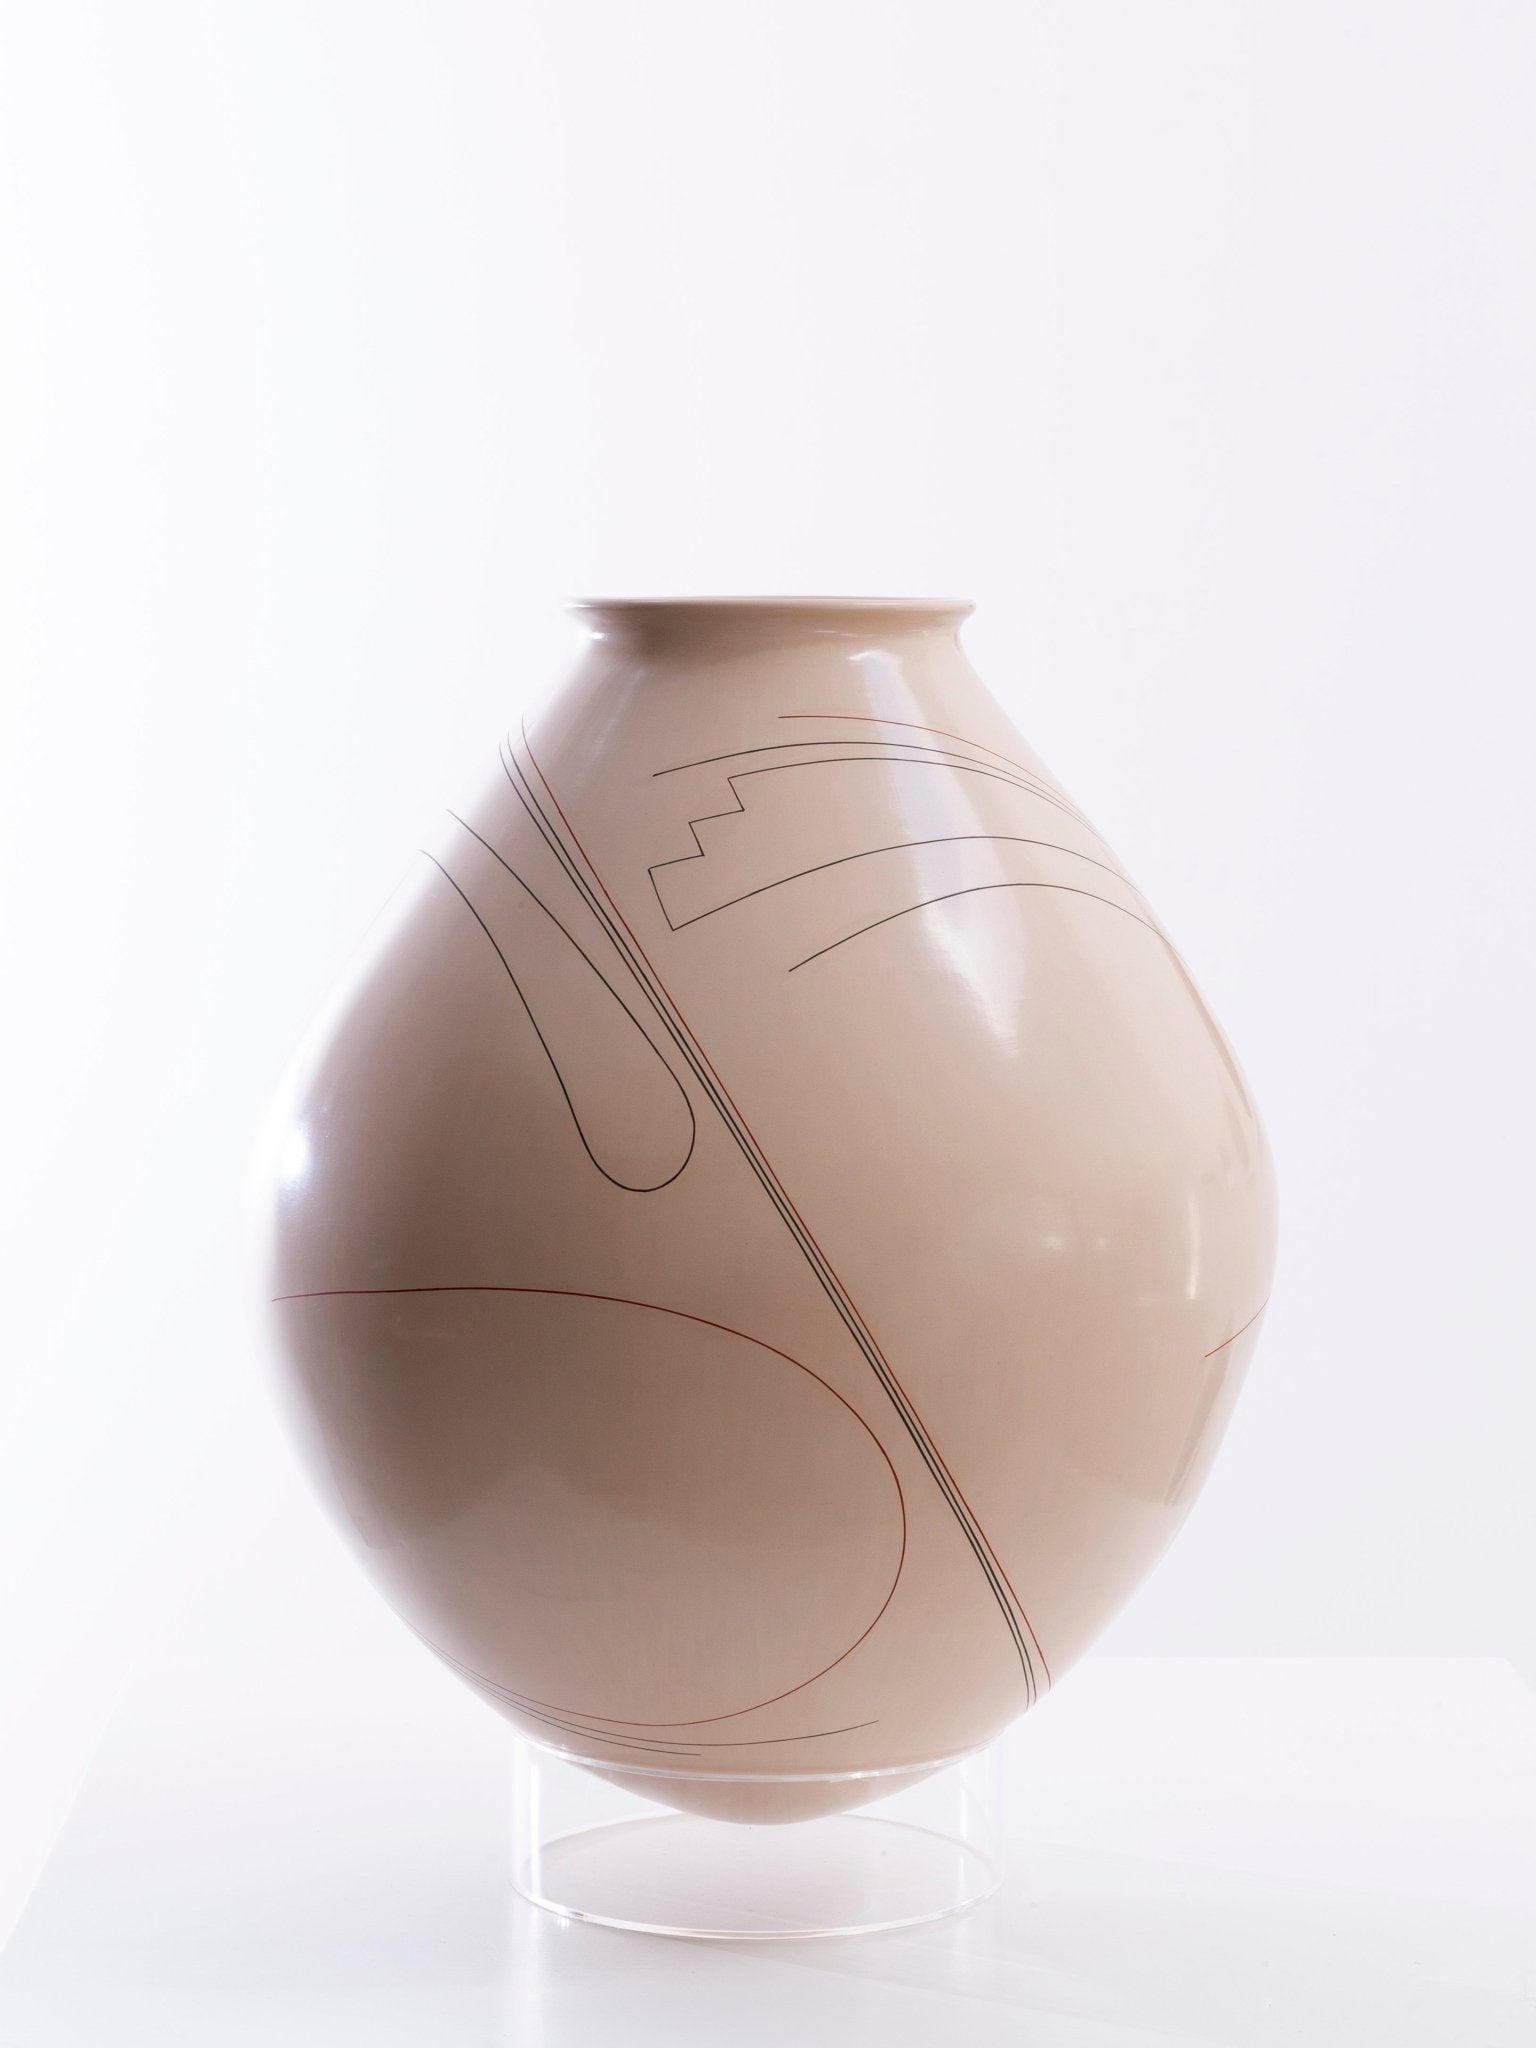 Keramik von Mata Ortiz – Diego Valles I – Huichol Art – Marakame